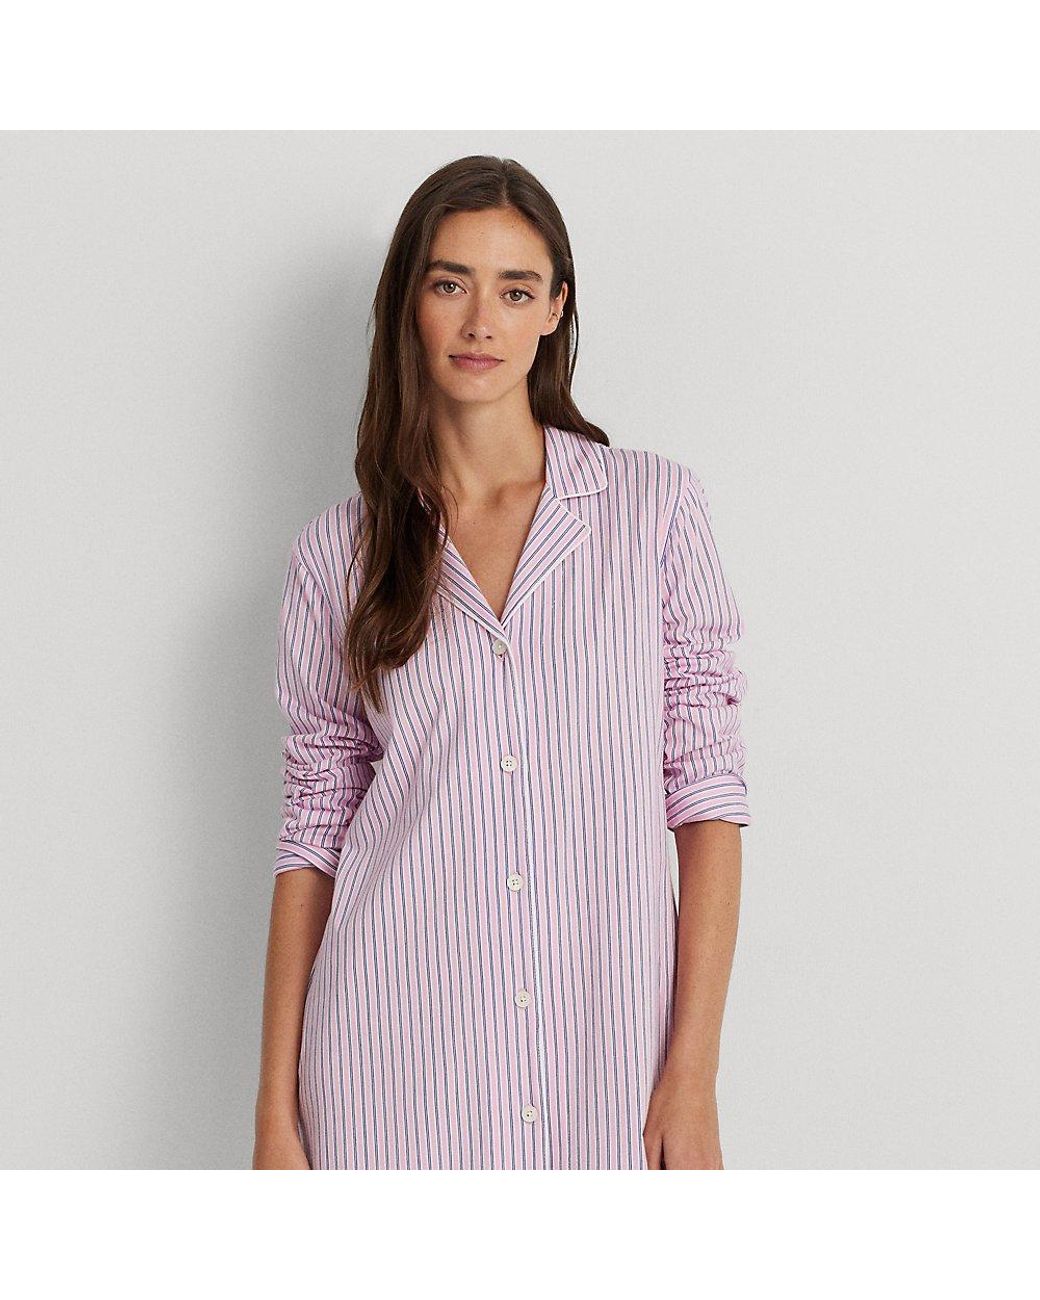 Ralph Lauren Ralph Lauren Striped Cotton Jersey Sleep Shirt in